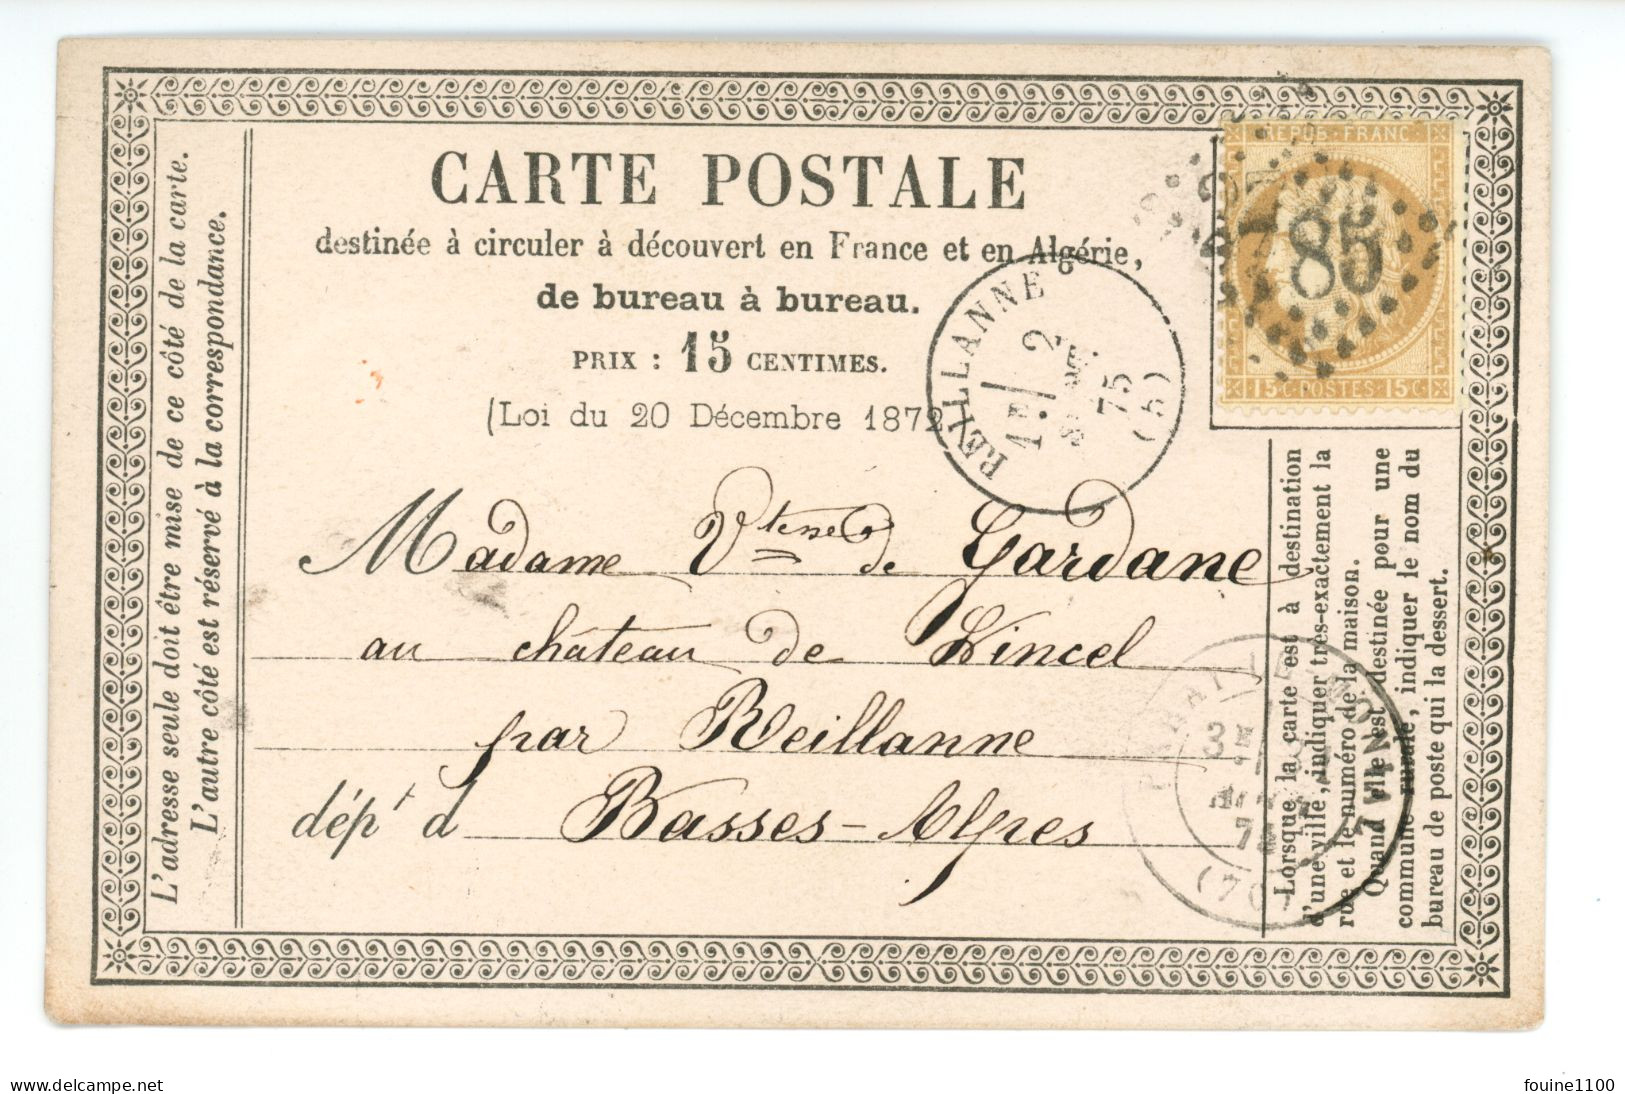 CARTE PRECURSEUR Vicomtesse DE GARDANE Château De Lincel REILLANNE 04 / Libraire BIDEAUD MUSSET à PARAY LE MONIAL - 1849-1876: Periodo Classico